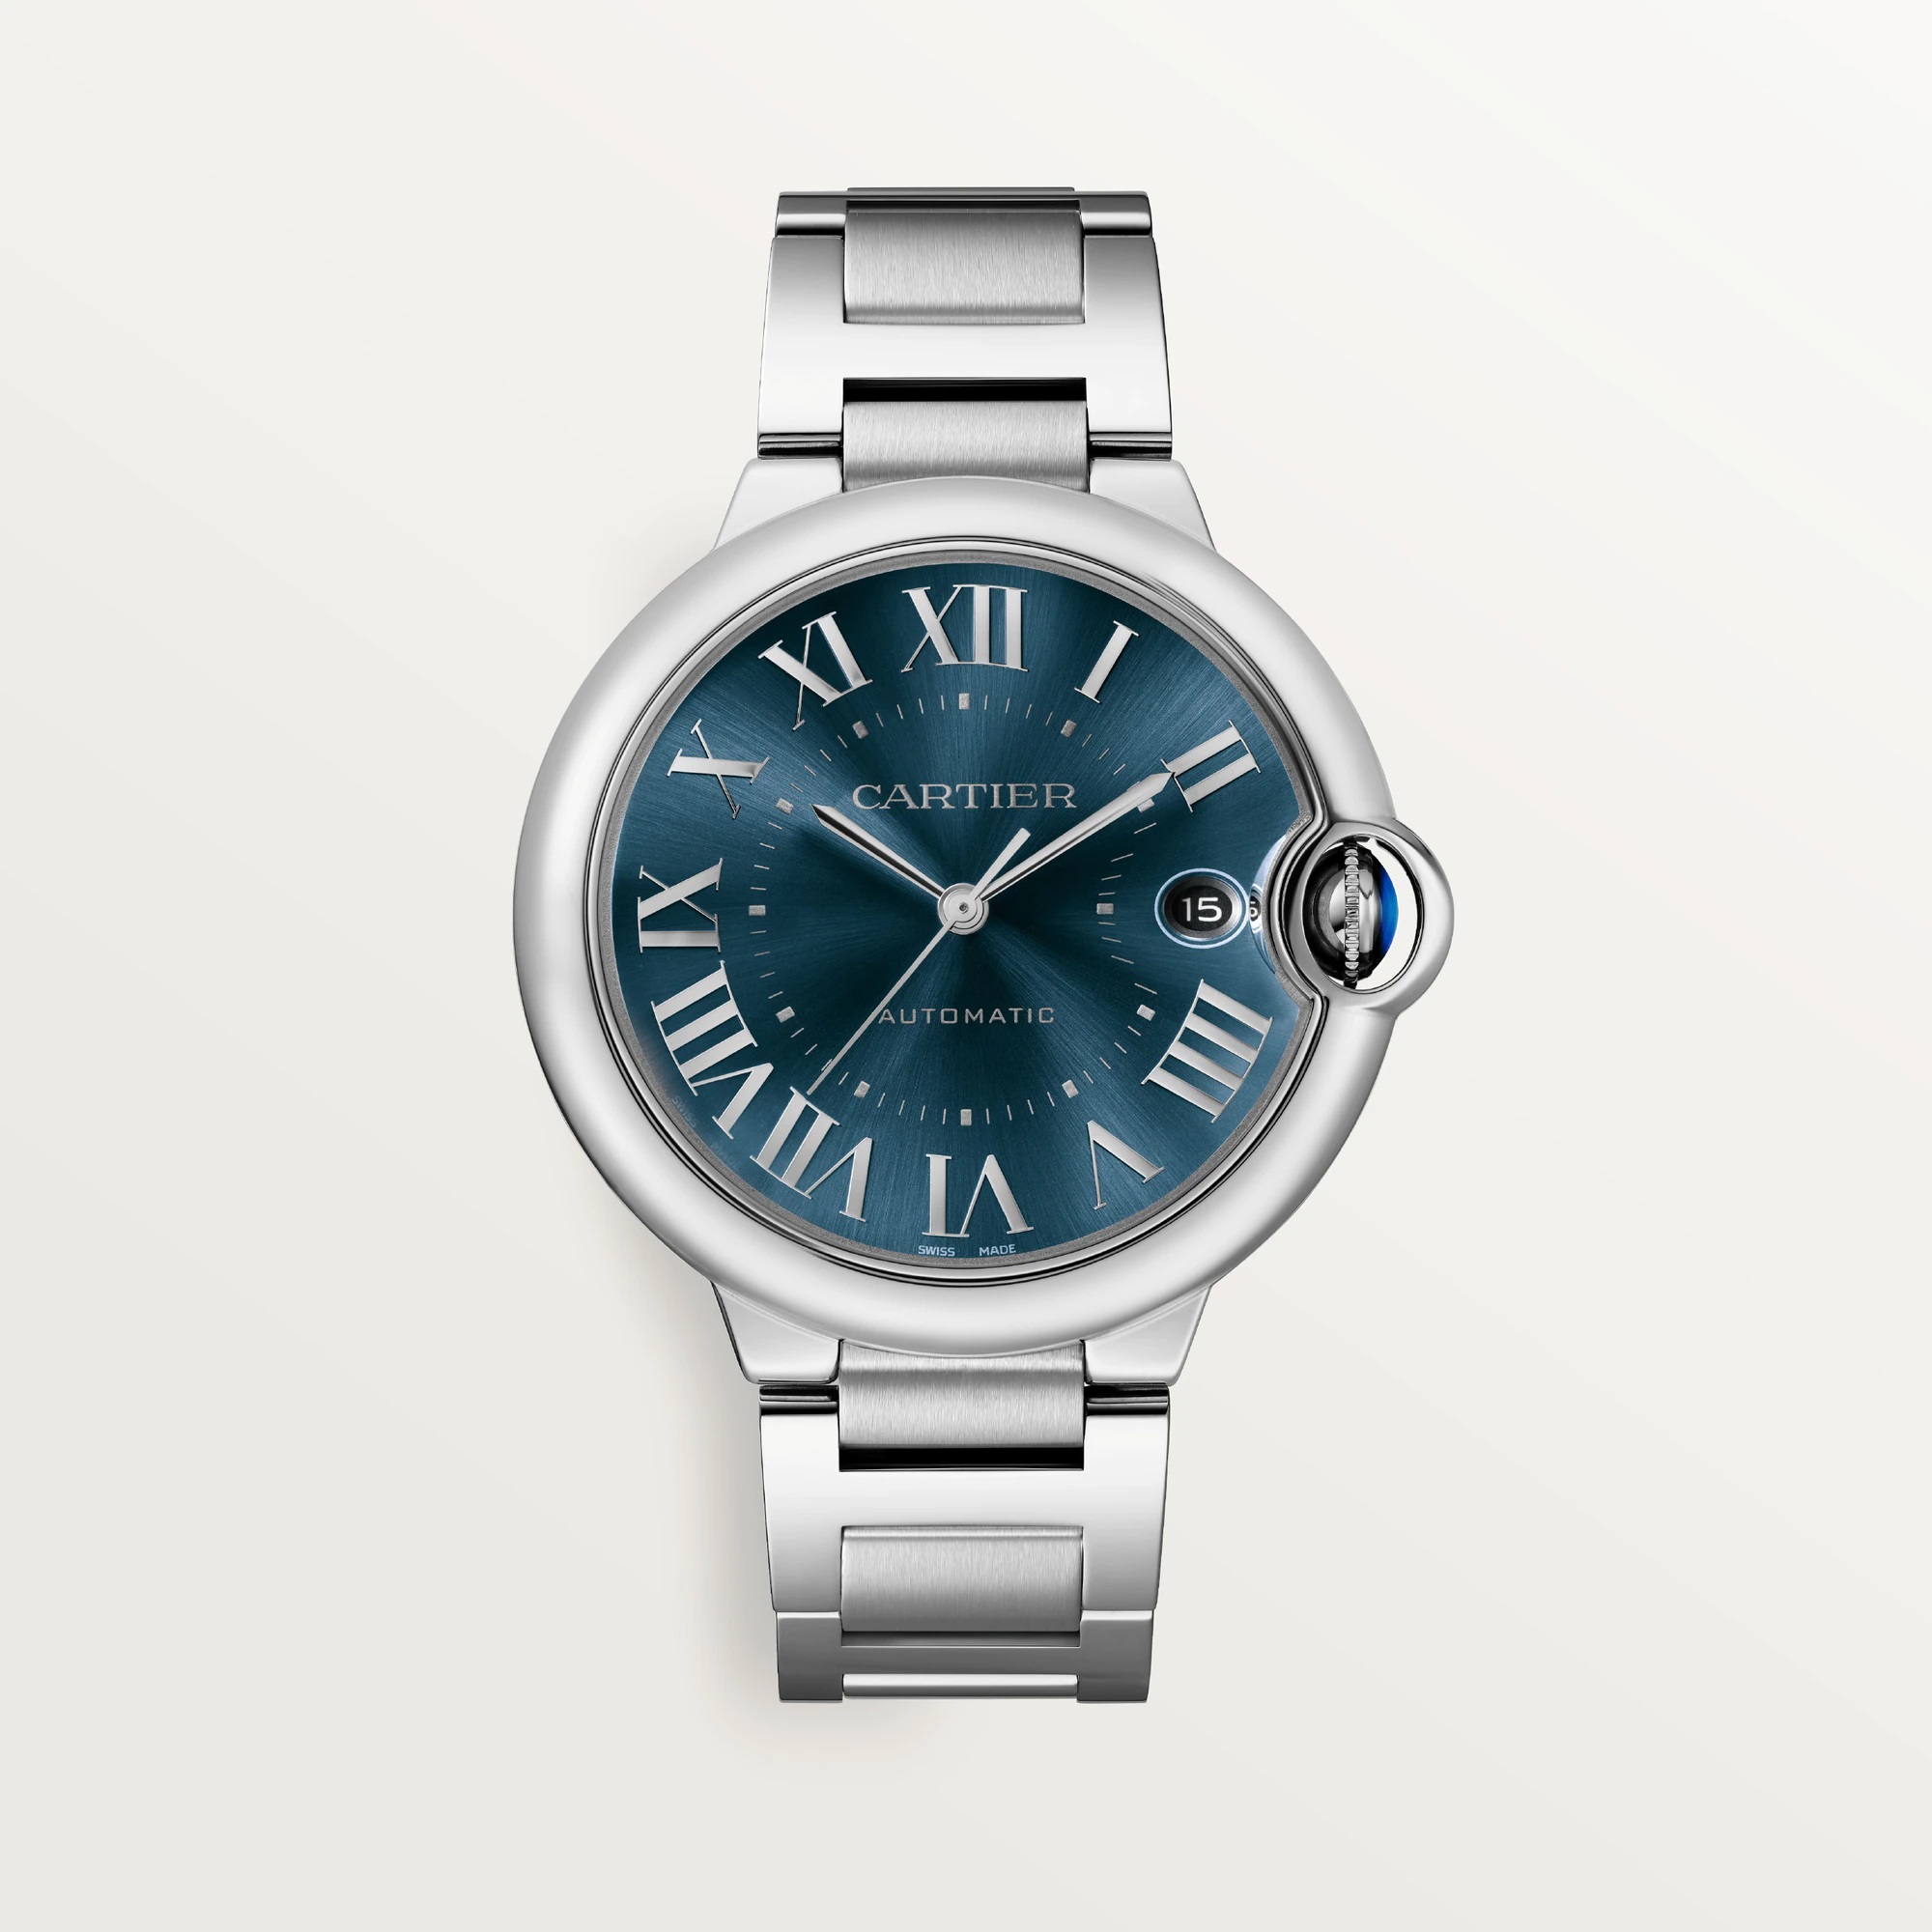 Ballon Bleu de Cartier Watch, Blue Sunray-Brushed Dial, 40mm
